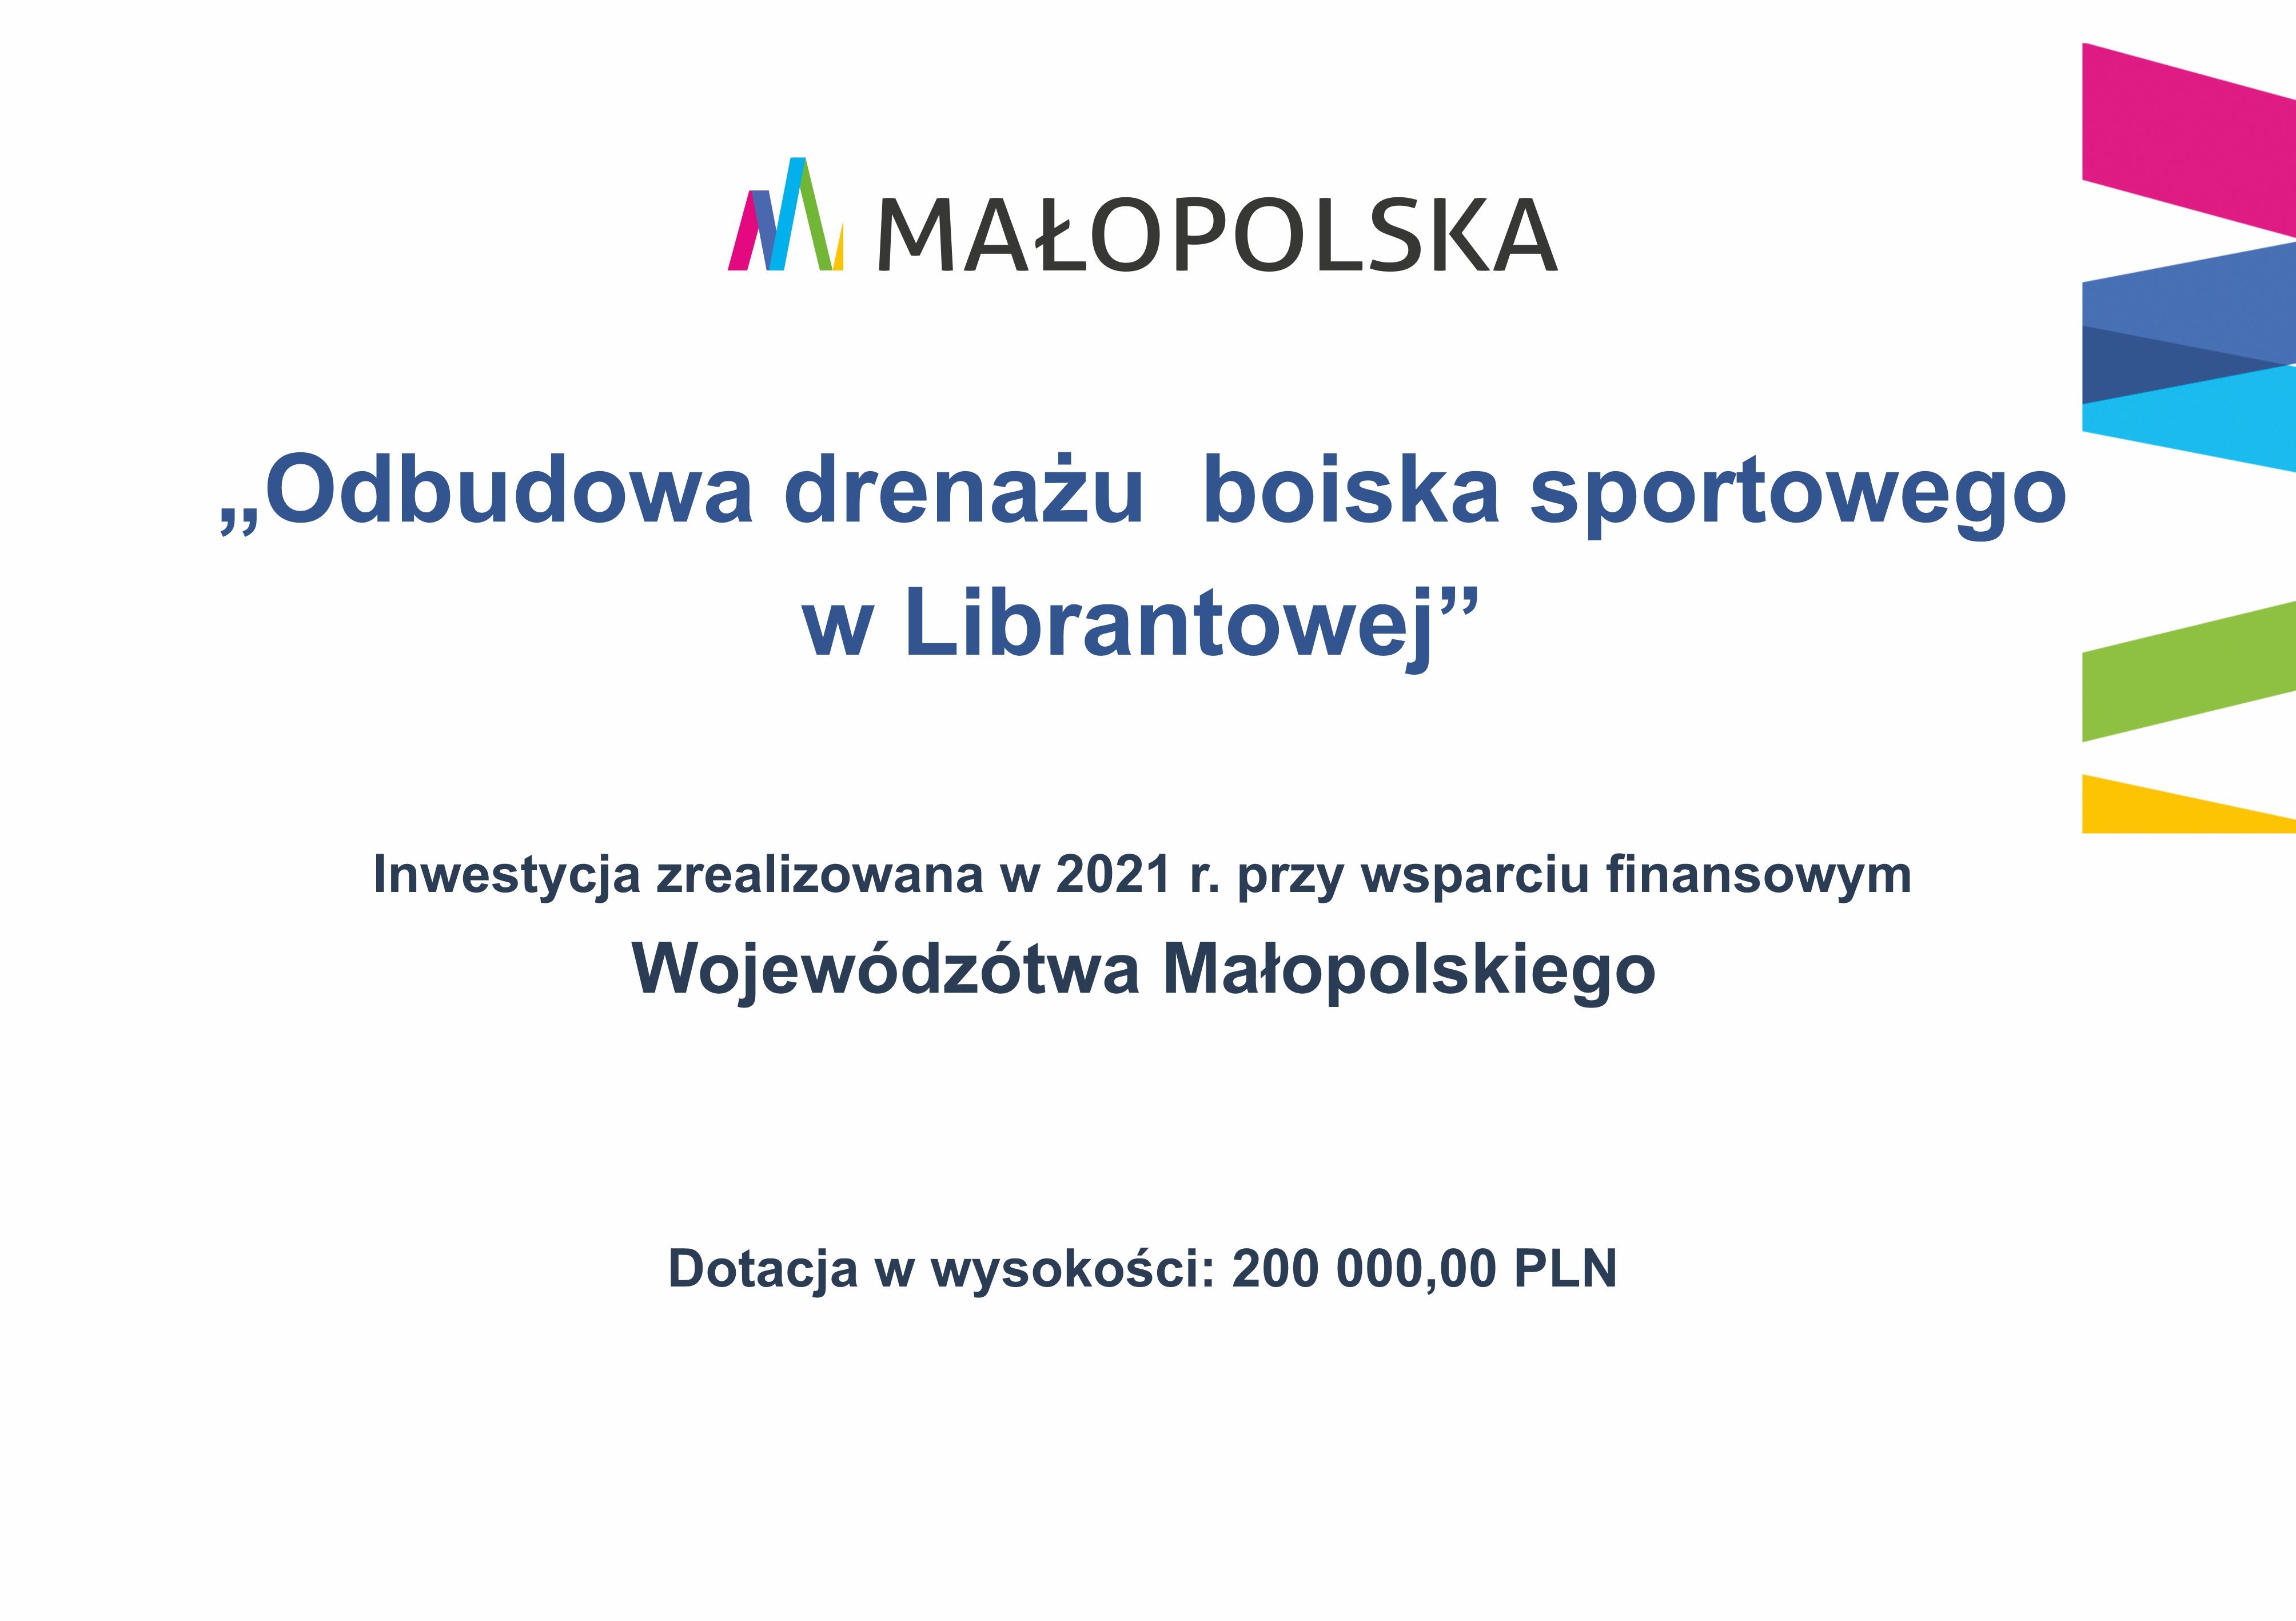 Tablica informacyjna: Od góry logo Małopolska - poniżej napis: MAŁOPOLSKA  „Odbudowa drenażu boiska sportowego  w Librantowej”  Inwestycja zrealizowana w 2021 r. przy wsparciu finansowym  Wojewódzótwa Małopolskiego  Dotacja w wysokości: 200 000,00 PLN 